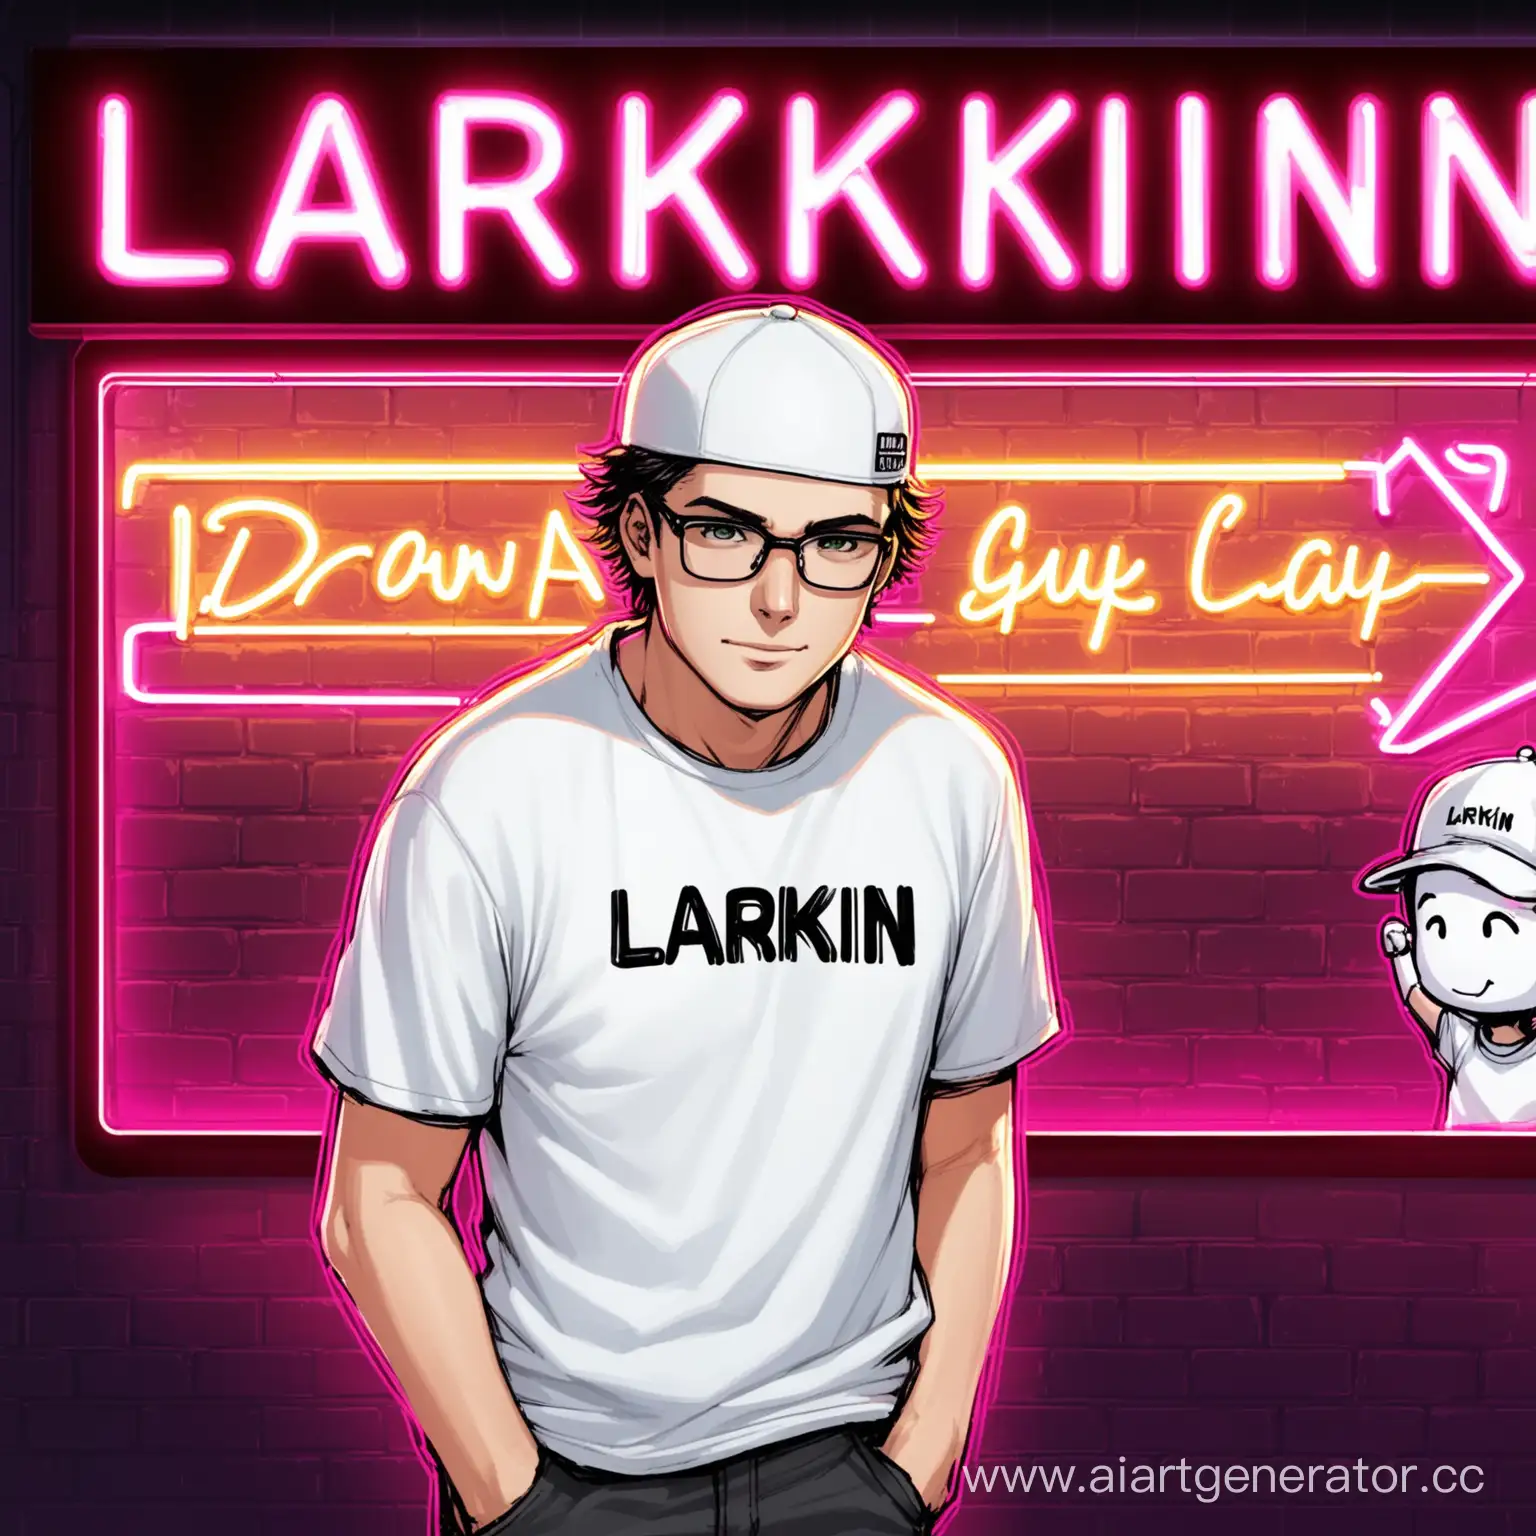 нарисуй  парня-стримера, у которого белая кепка и футболка, а на заднем плане неоновая вывеска "LARKIN"